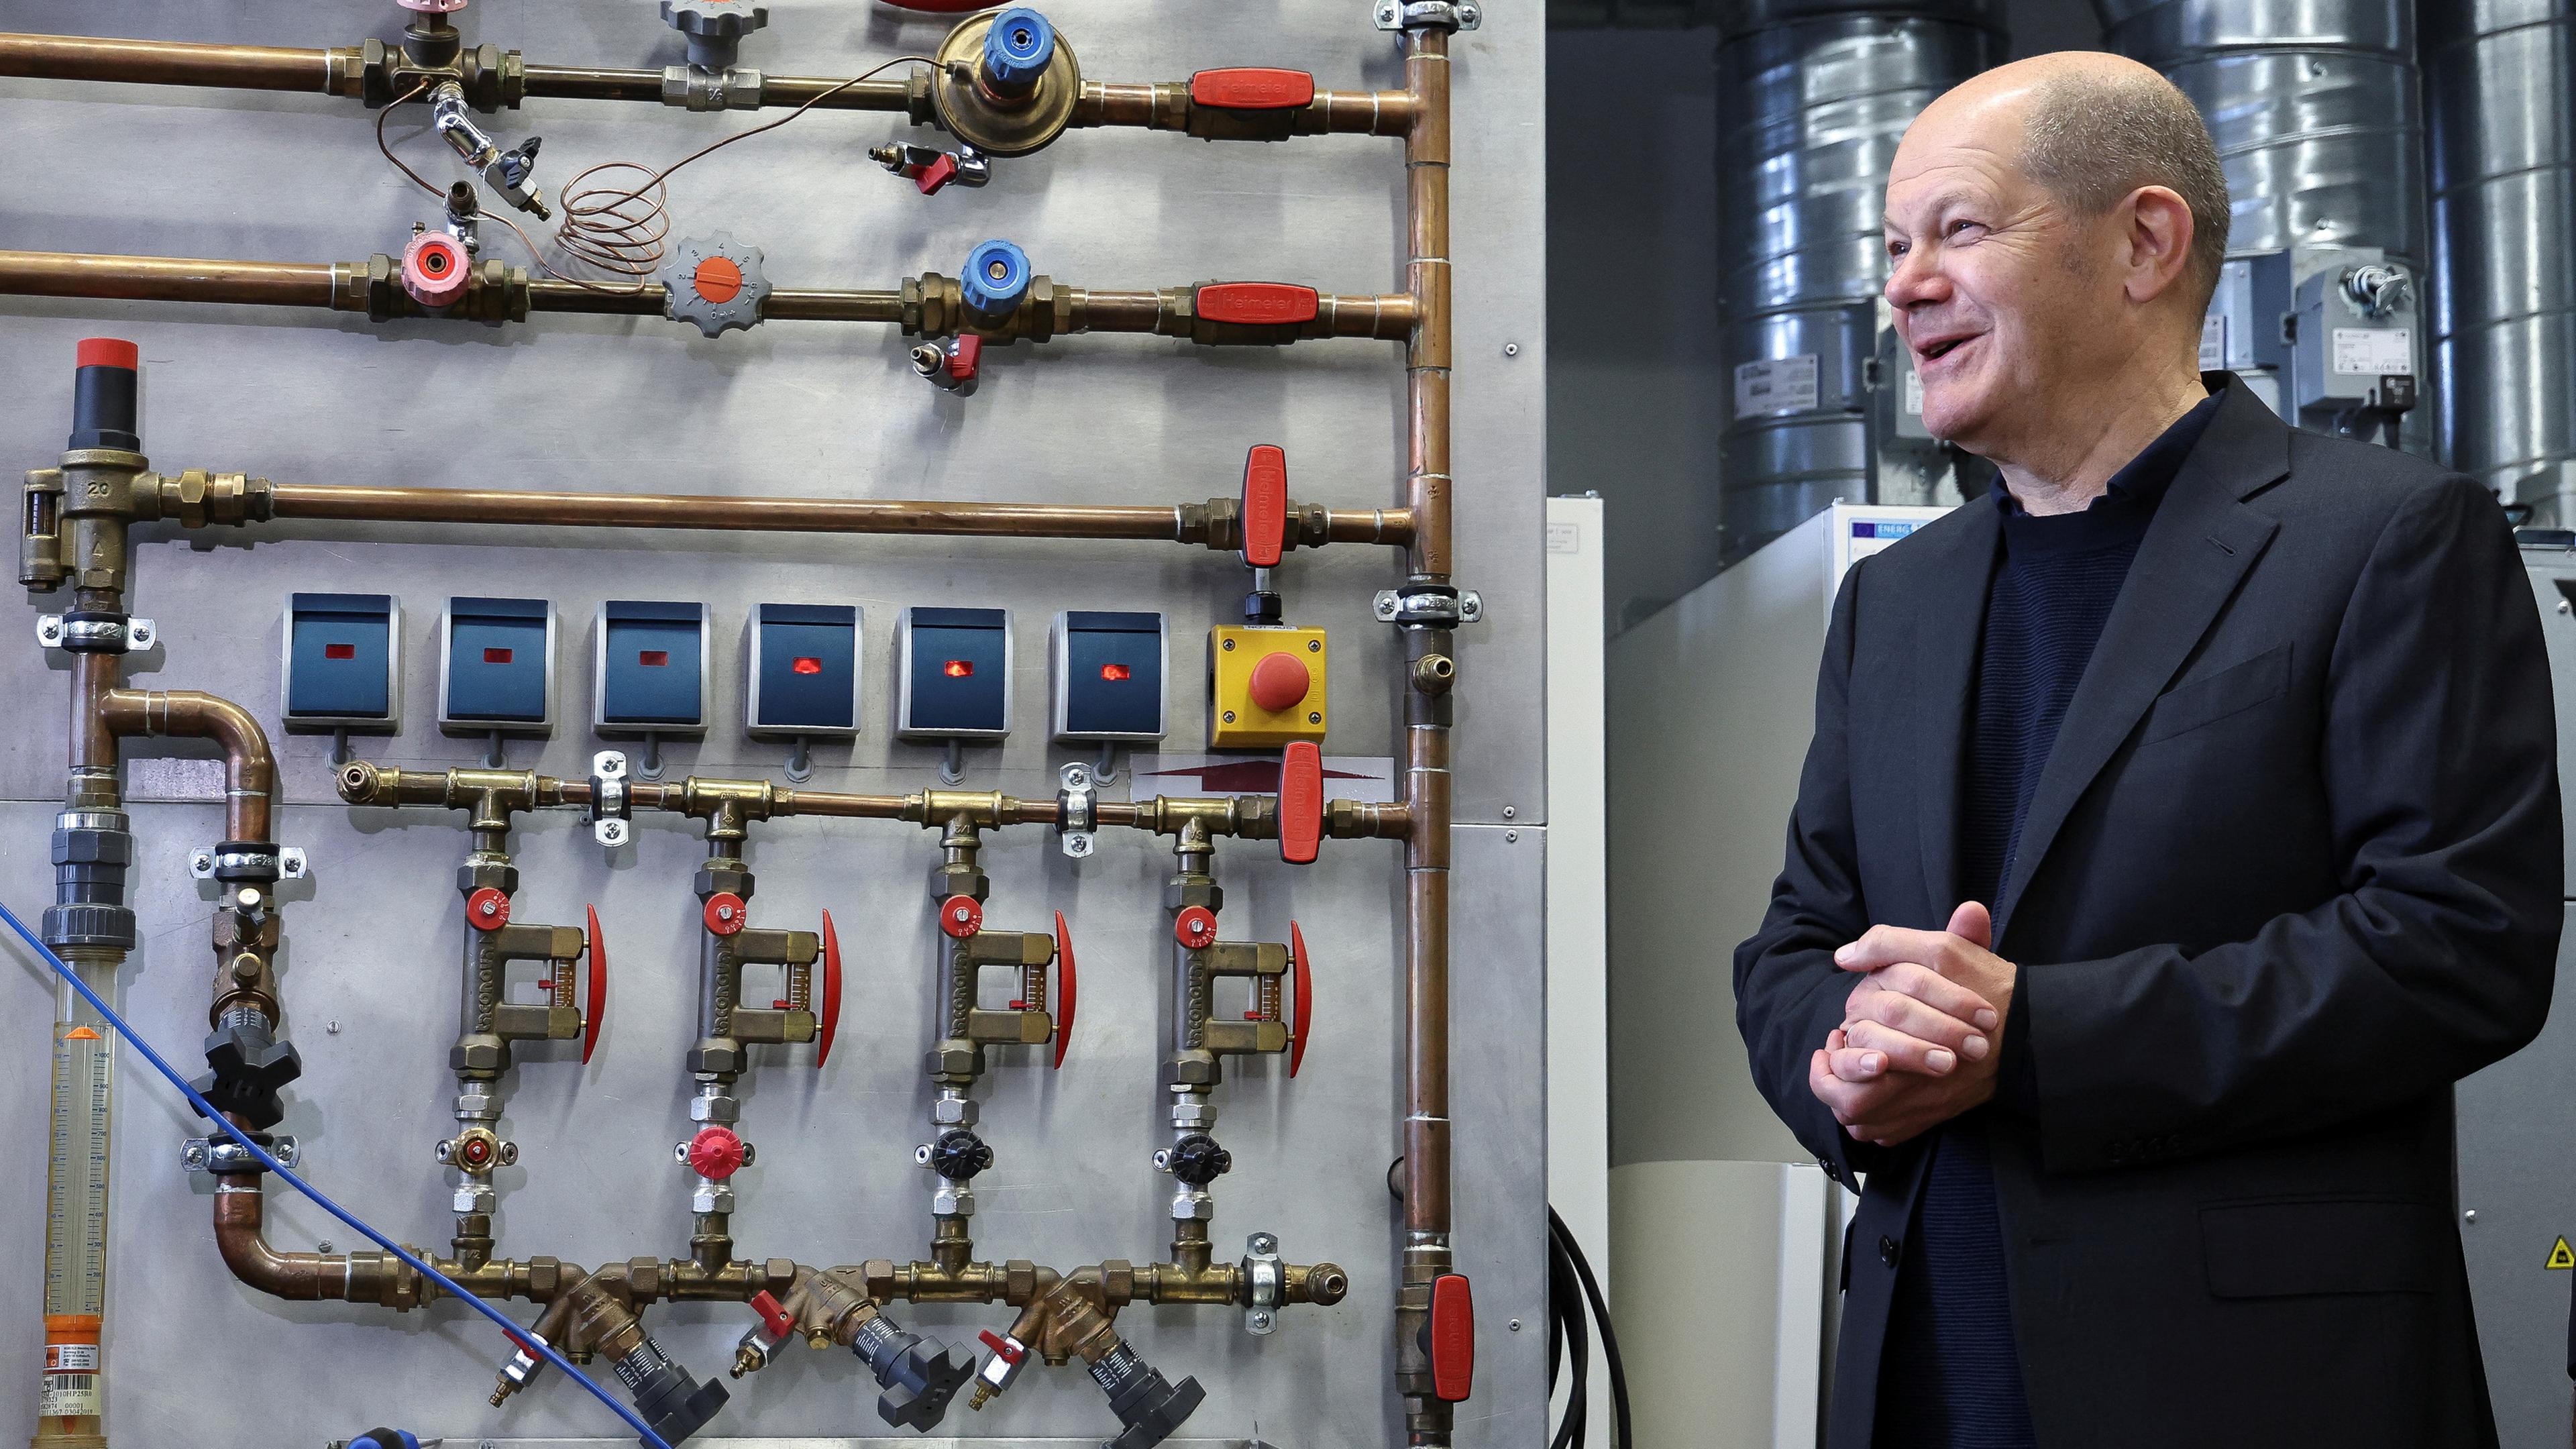 Scholz steht vor einer Hitzepumpe bei seinem Besuch von Mitarbeitenden des Energiesektors in München